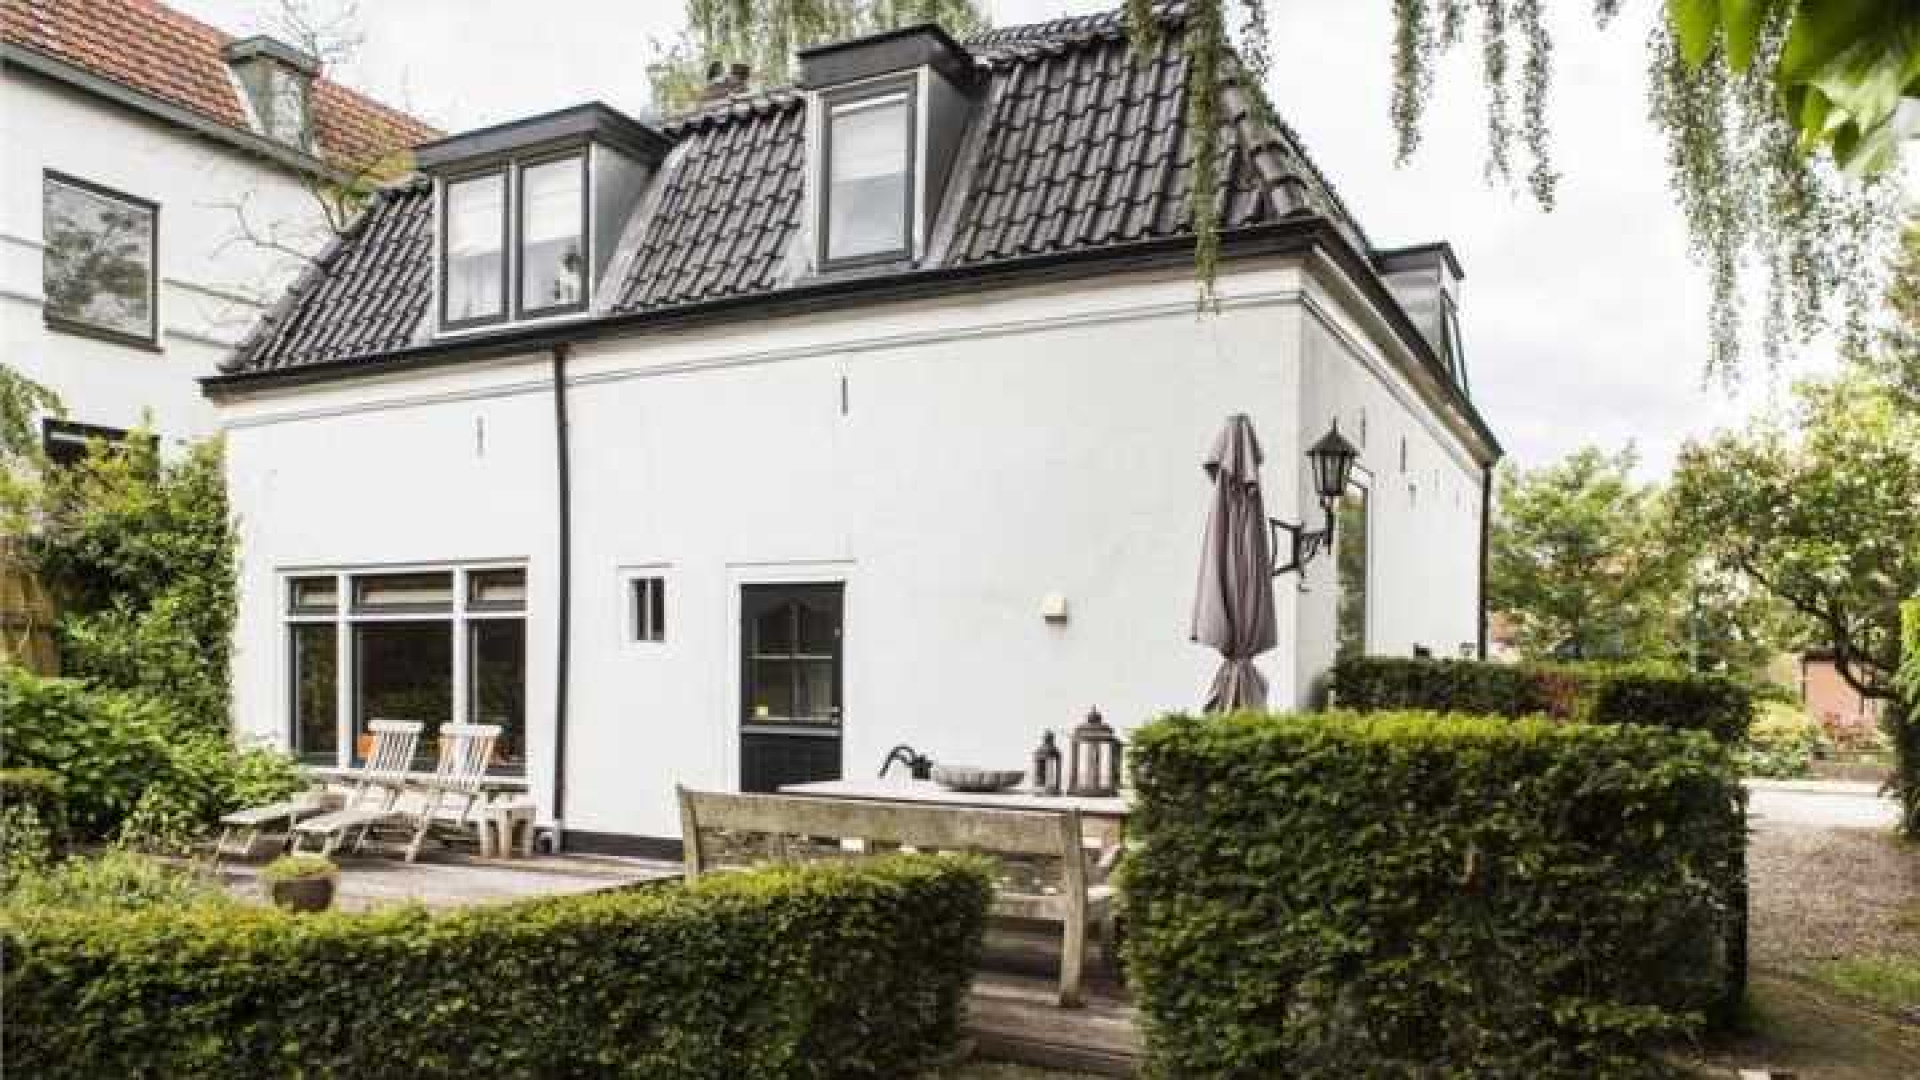 Mariska Hulscher verlaagt vraagprijs van haar villa. Zie foto's